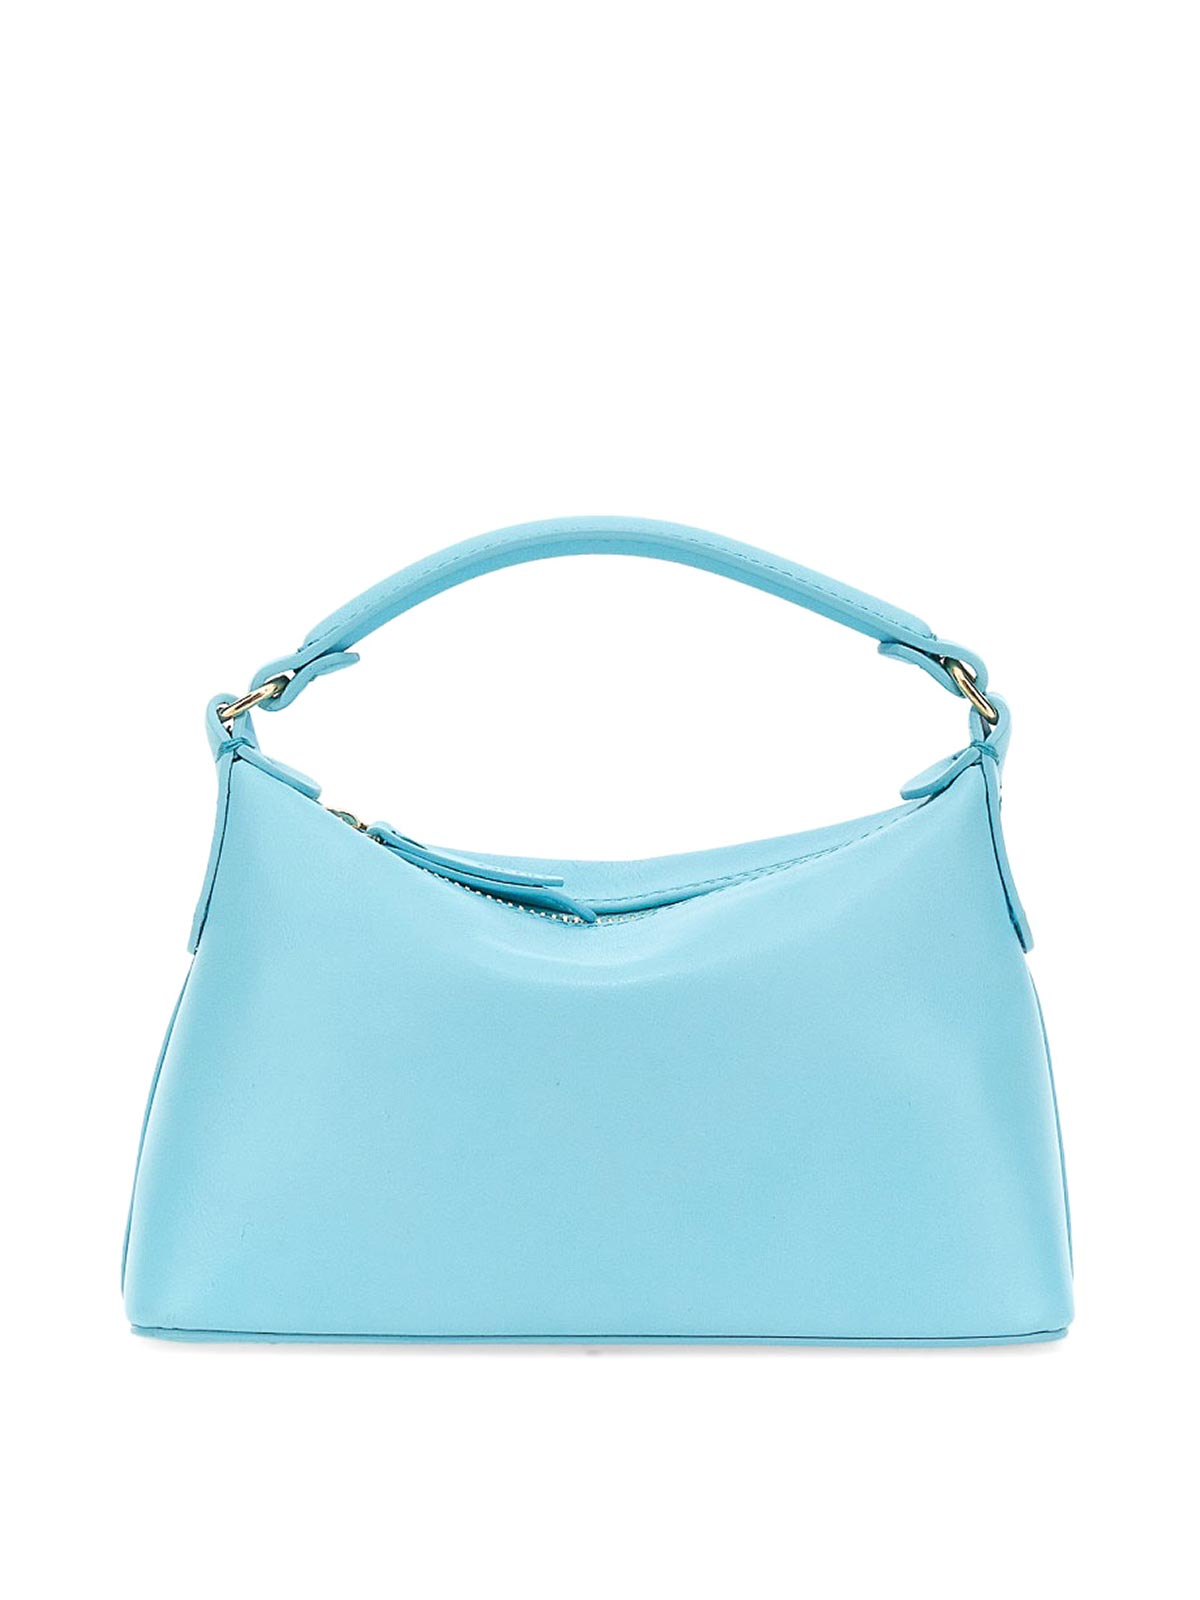 Leonie Hanne Hobo Shoulder Strap Bag In Light Blue